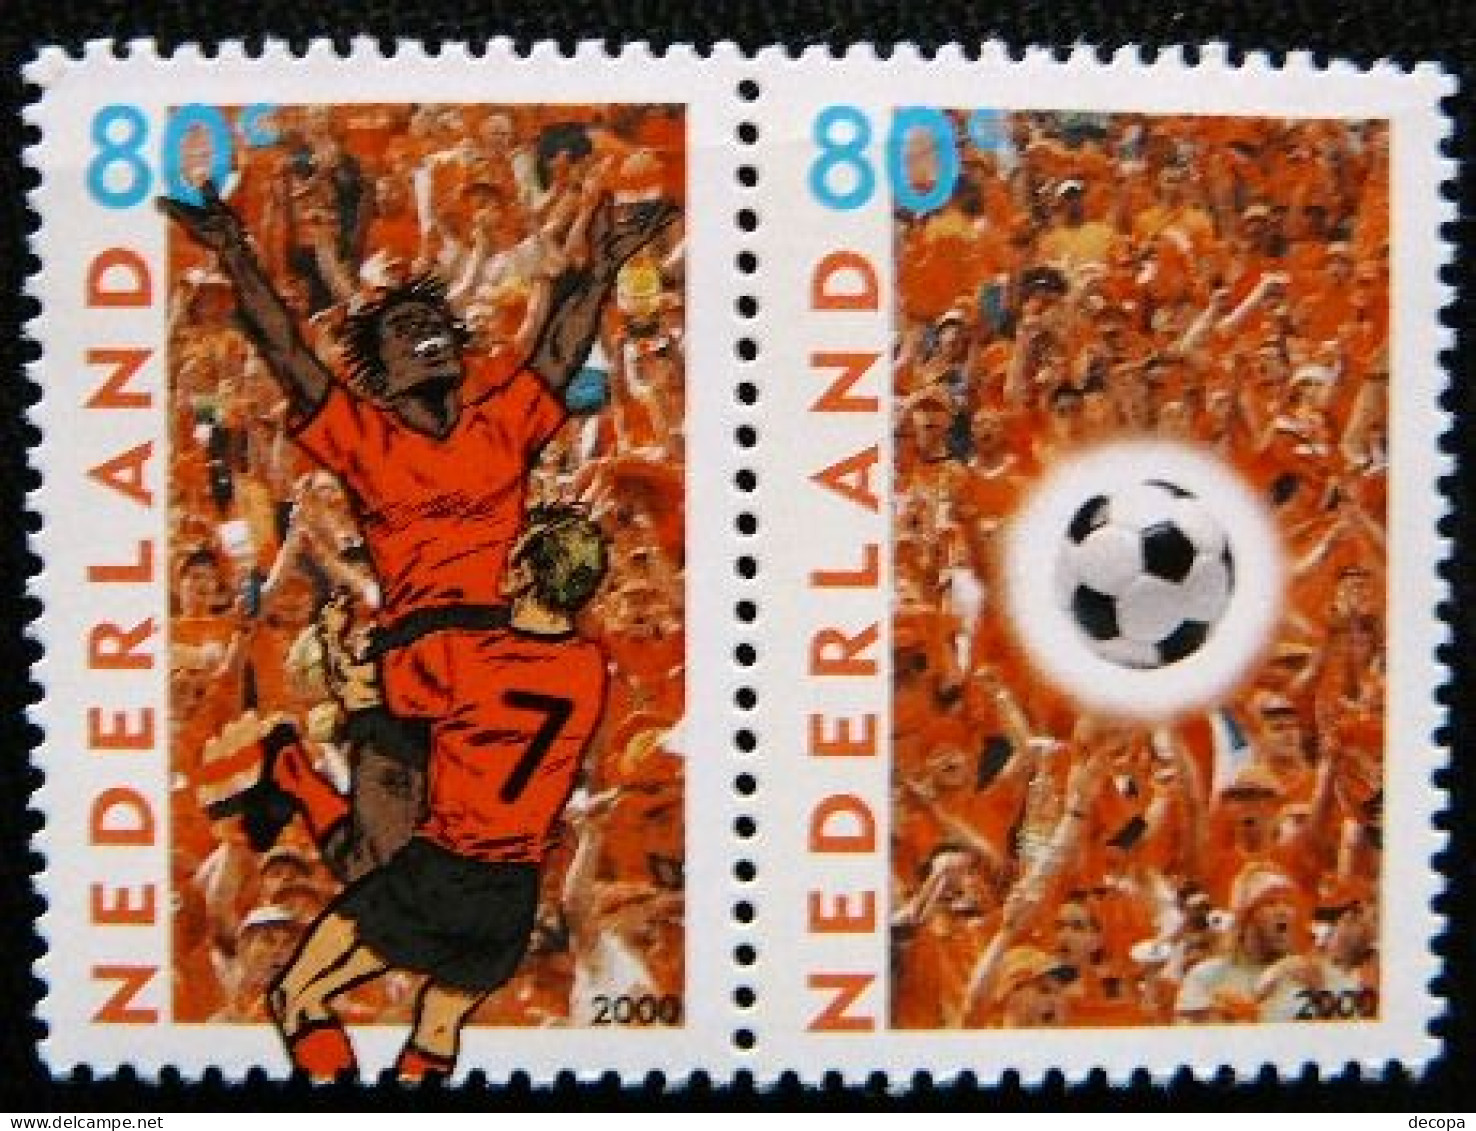 (dcbv-1358)  Netherlands  -  Pays-Bas   -   Nederland      Michel  1786-87      MNH   2003 - Championnat D'Europe (UEFA)